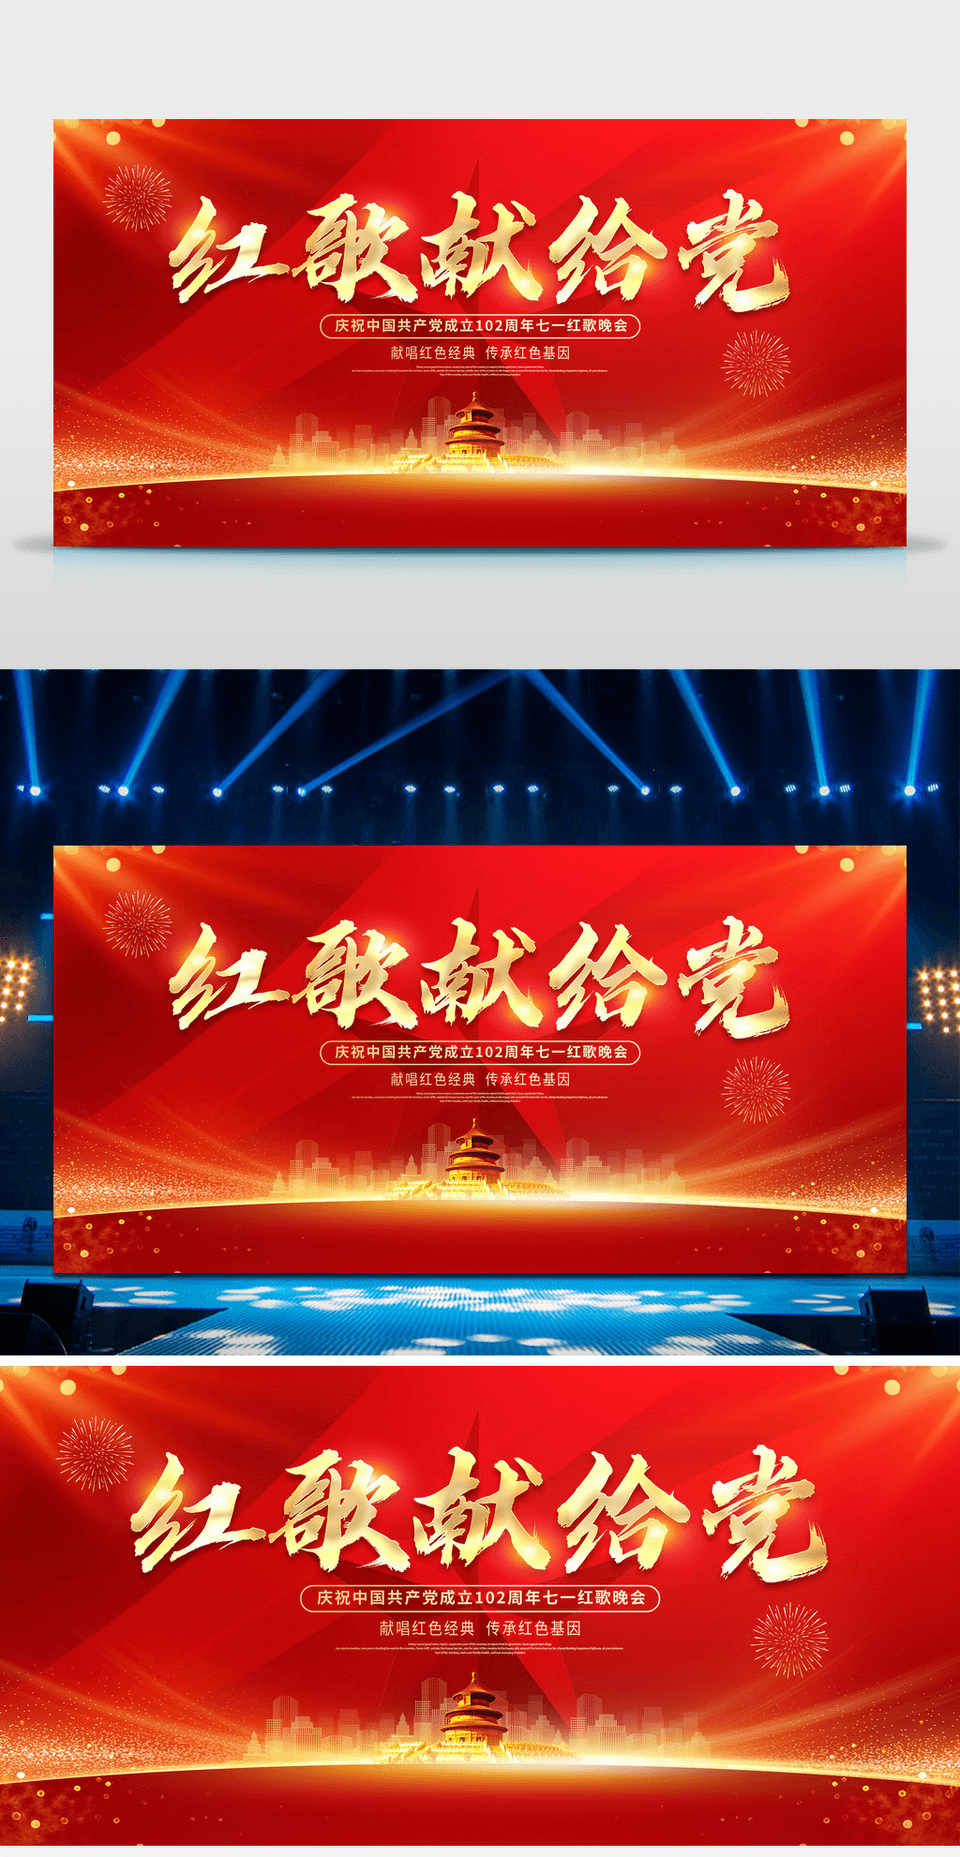 红色大气红歌献给党七一建党节红歌晚会党建宣传展板